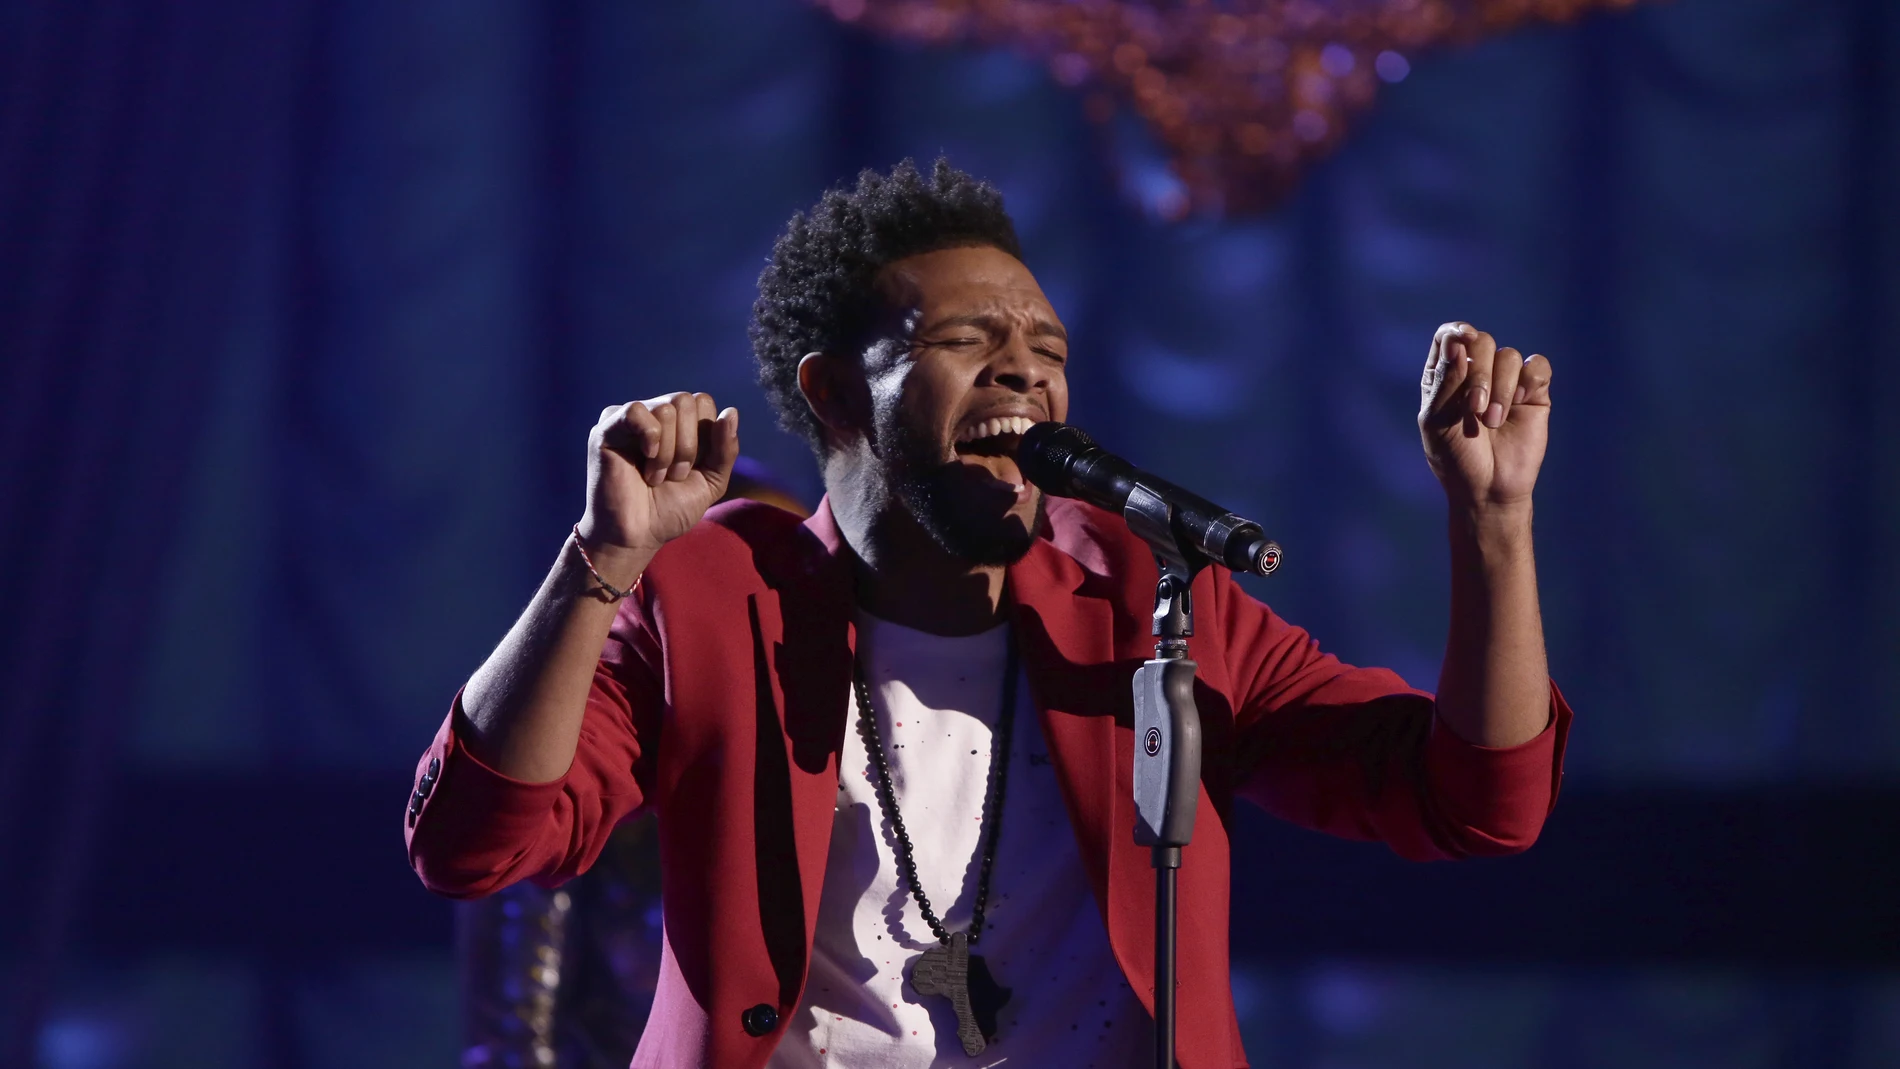 VÍDEO: Marcelino Damion canta ‘Earned it’ en la Semifinal de ‘La Voz’